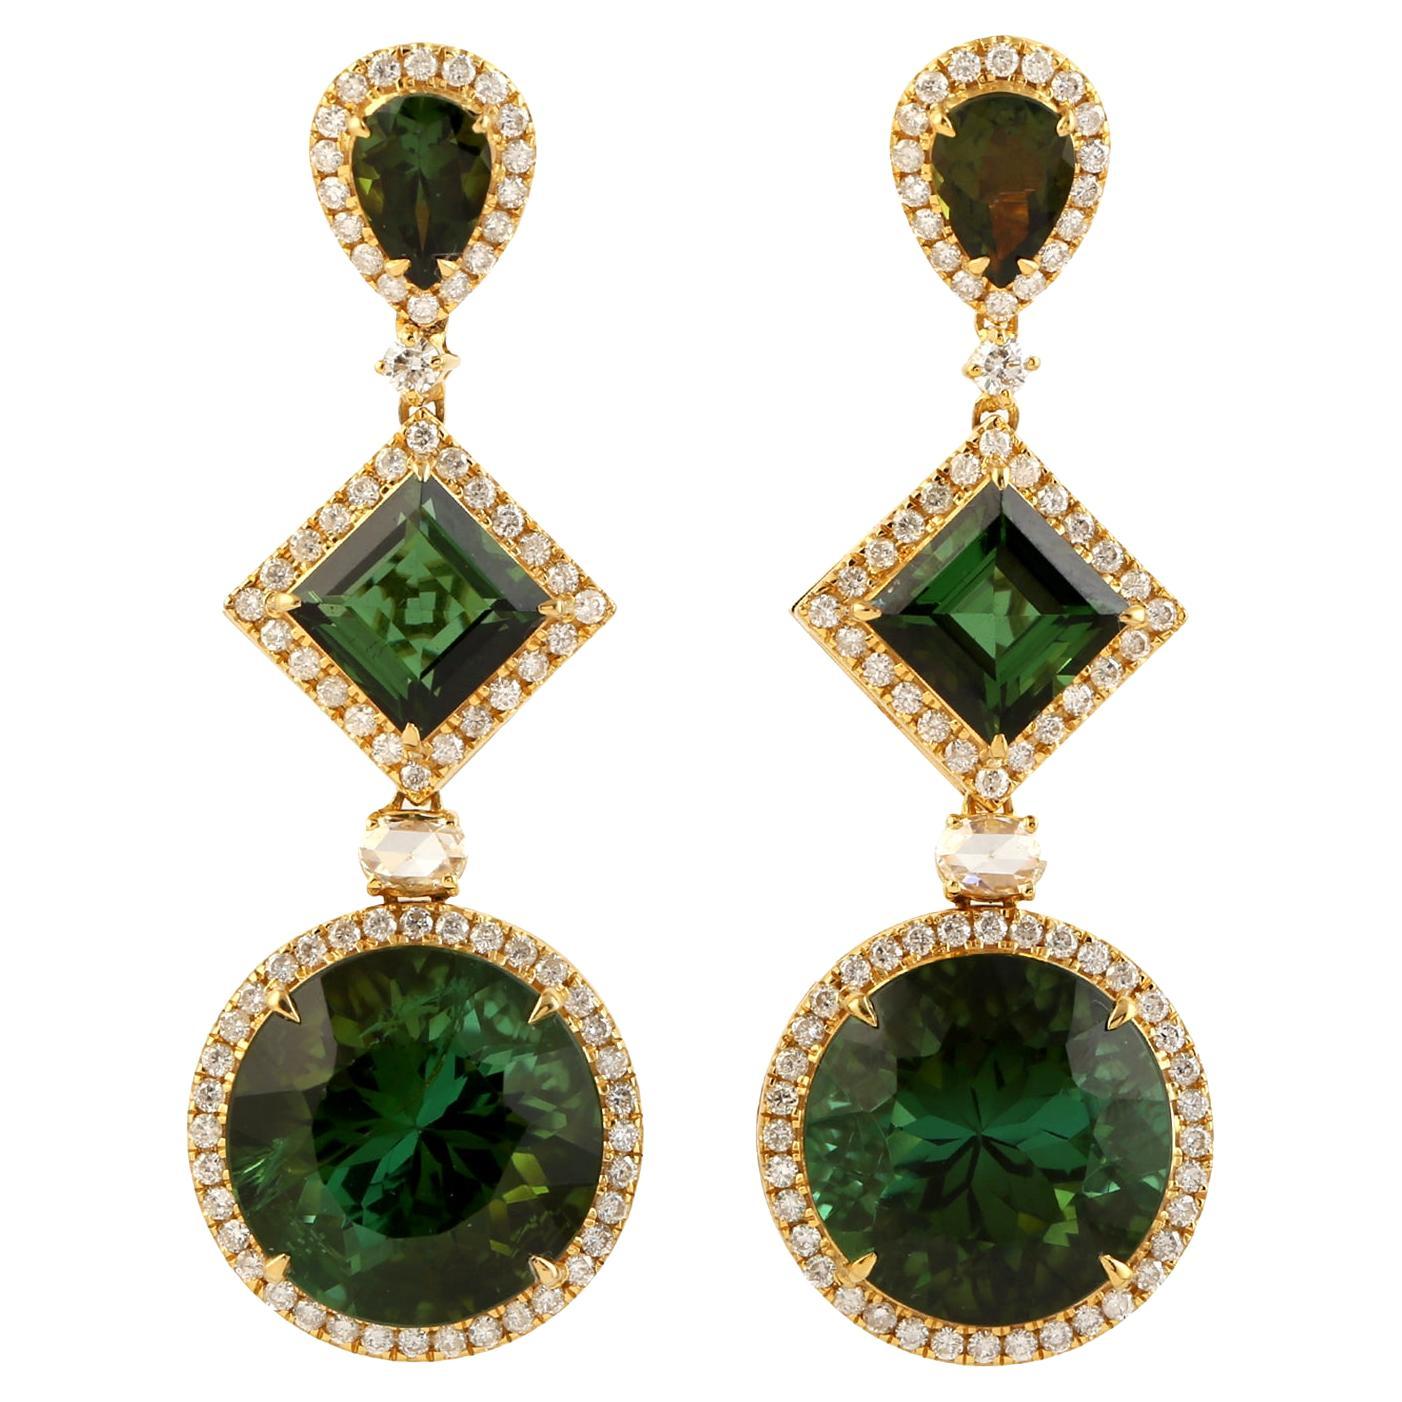 Dreistufige Ohrringe aus 18 Karat Gold mit mehrfarbigem grünem Turmalin und Diamanten